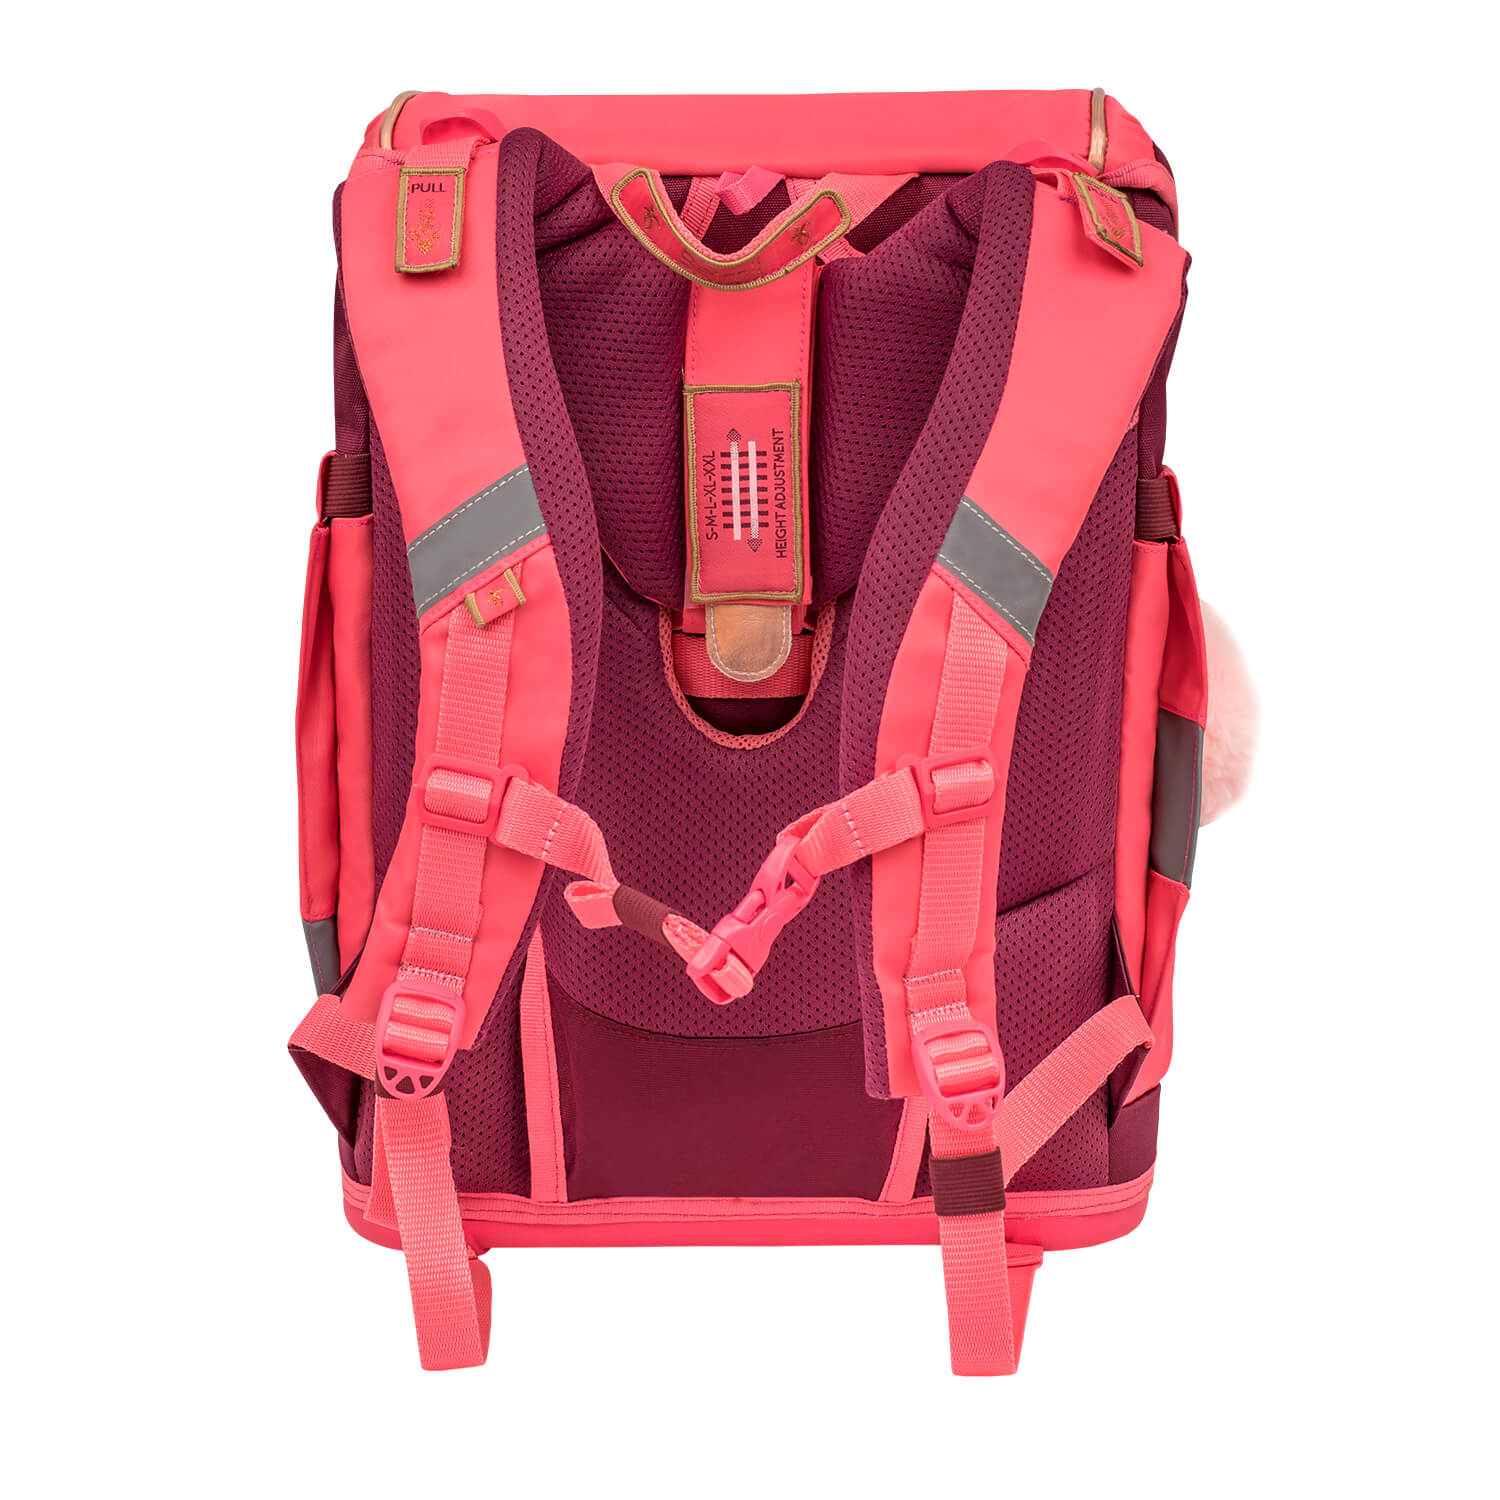 Smarty Plus Coral Schoolbag set 5pcs.